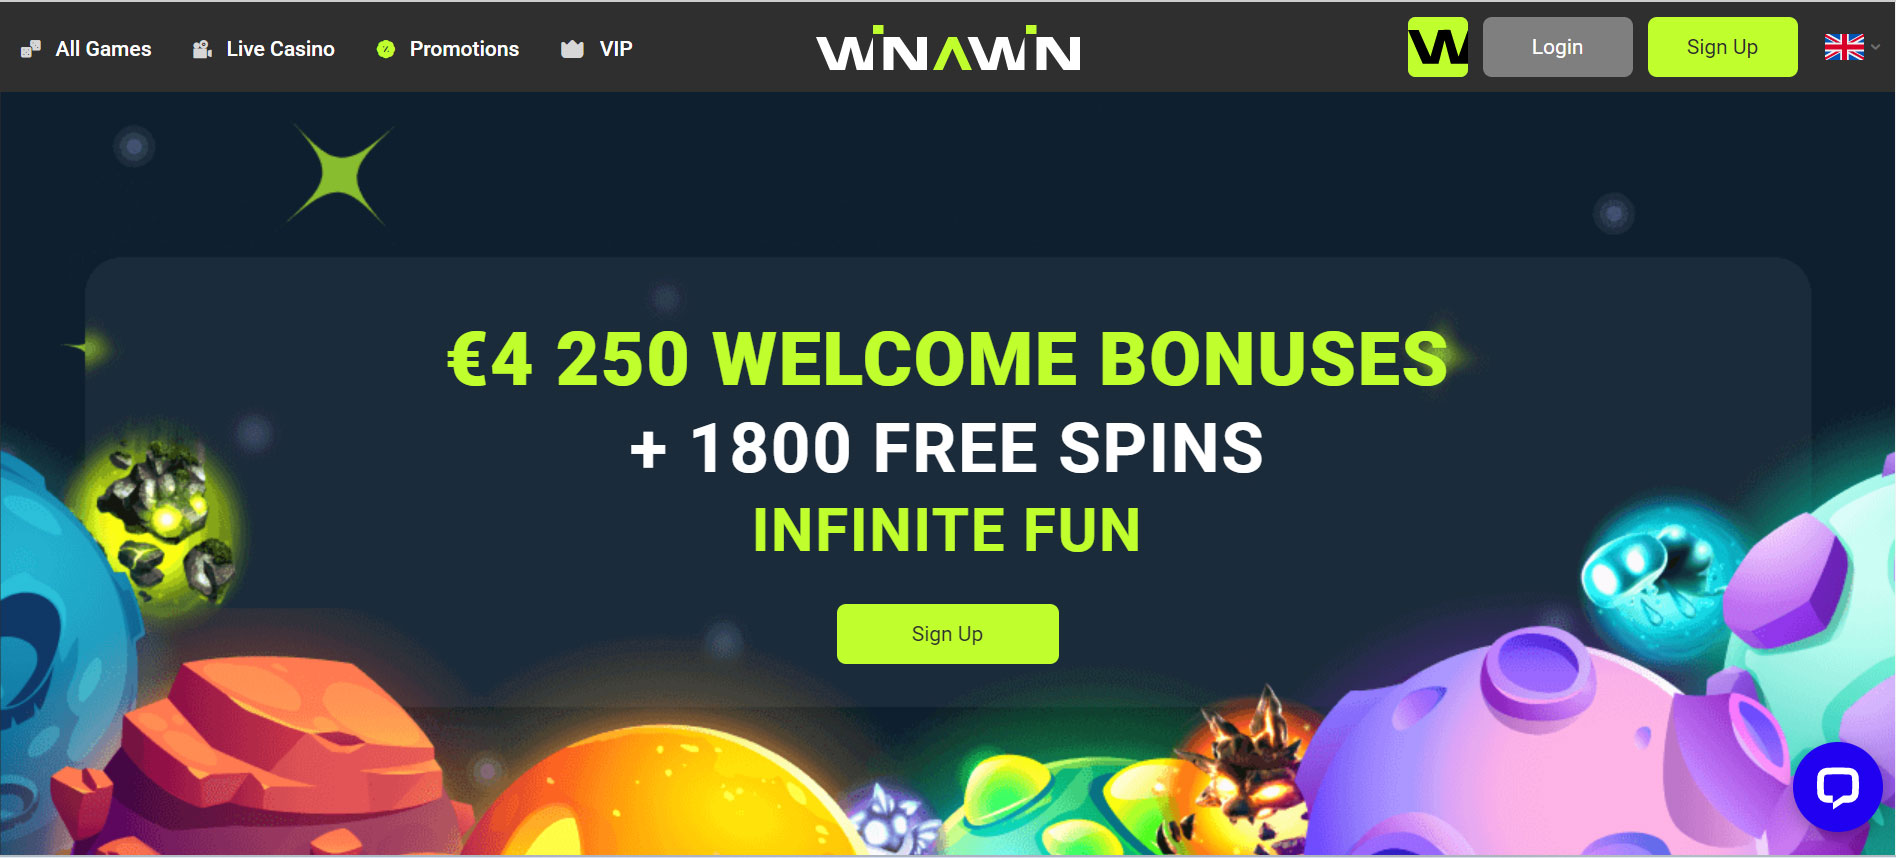 Winawin Casino Promotions